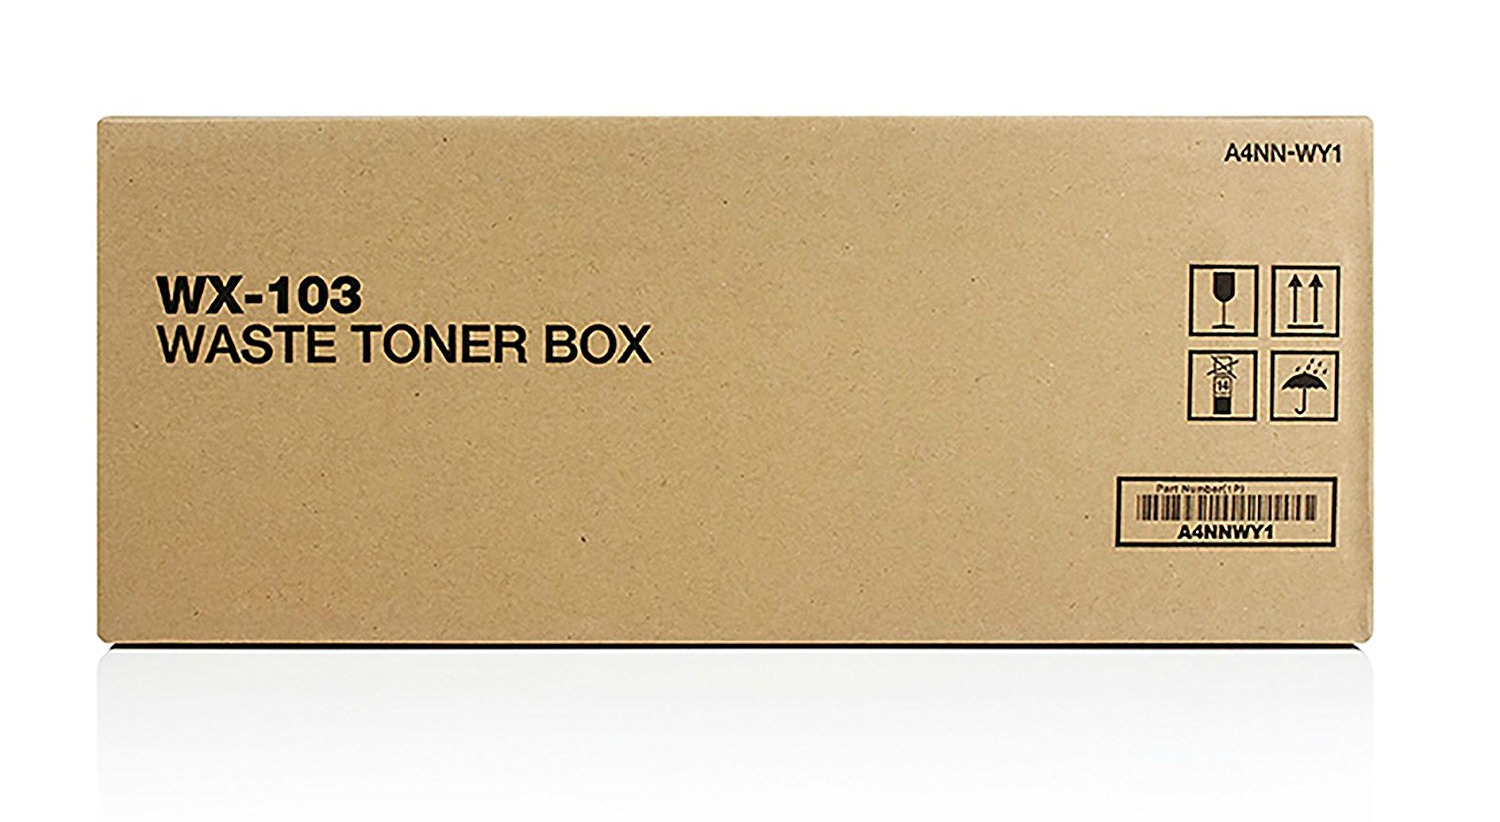 BIZHUB C224 waste toner box